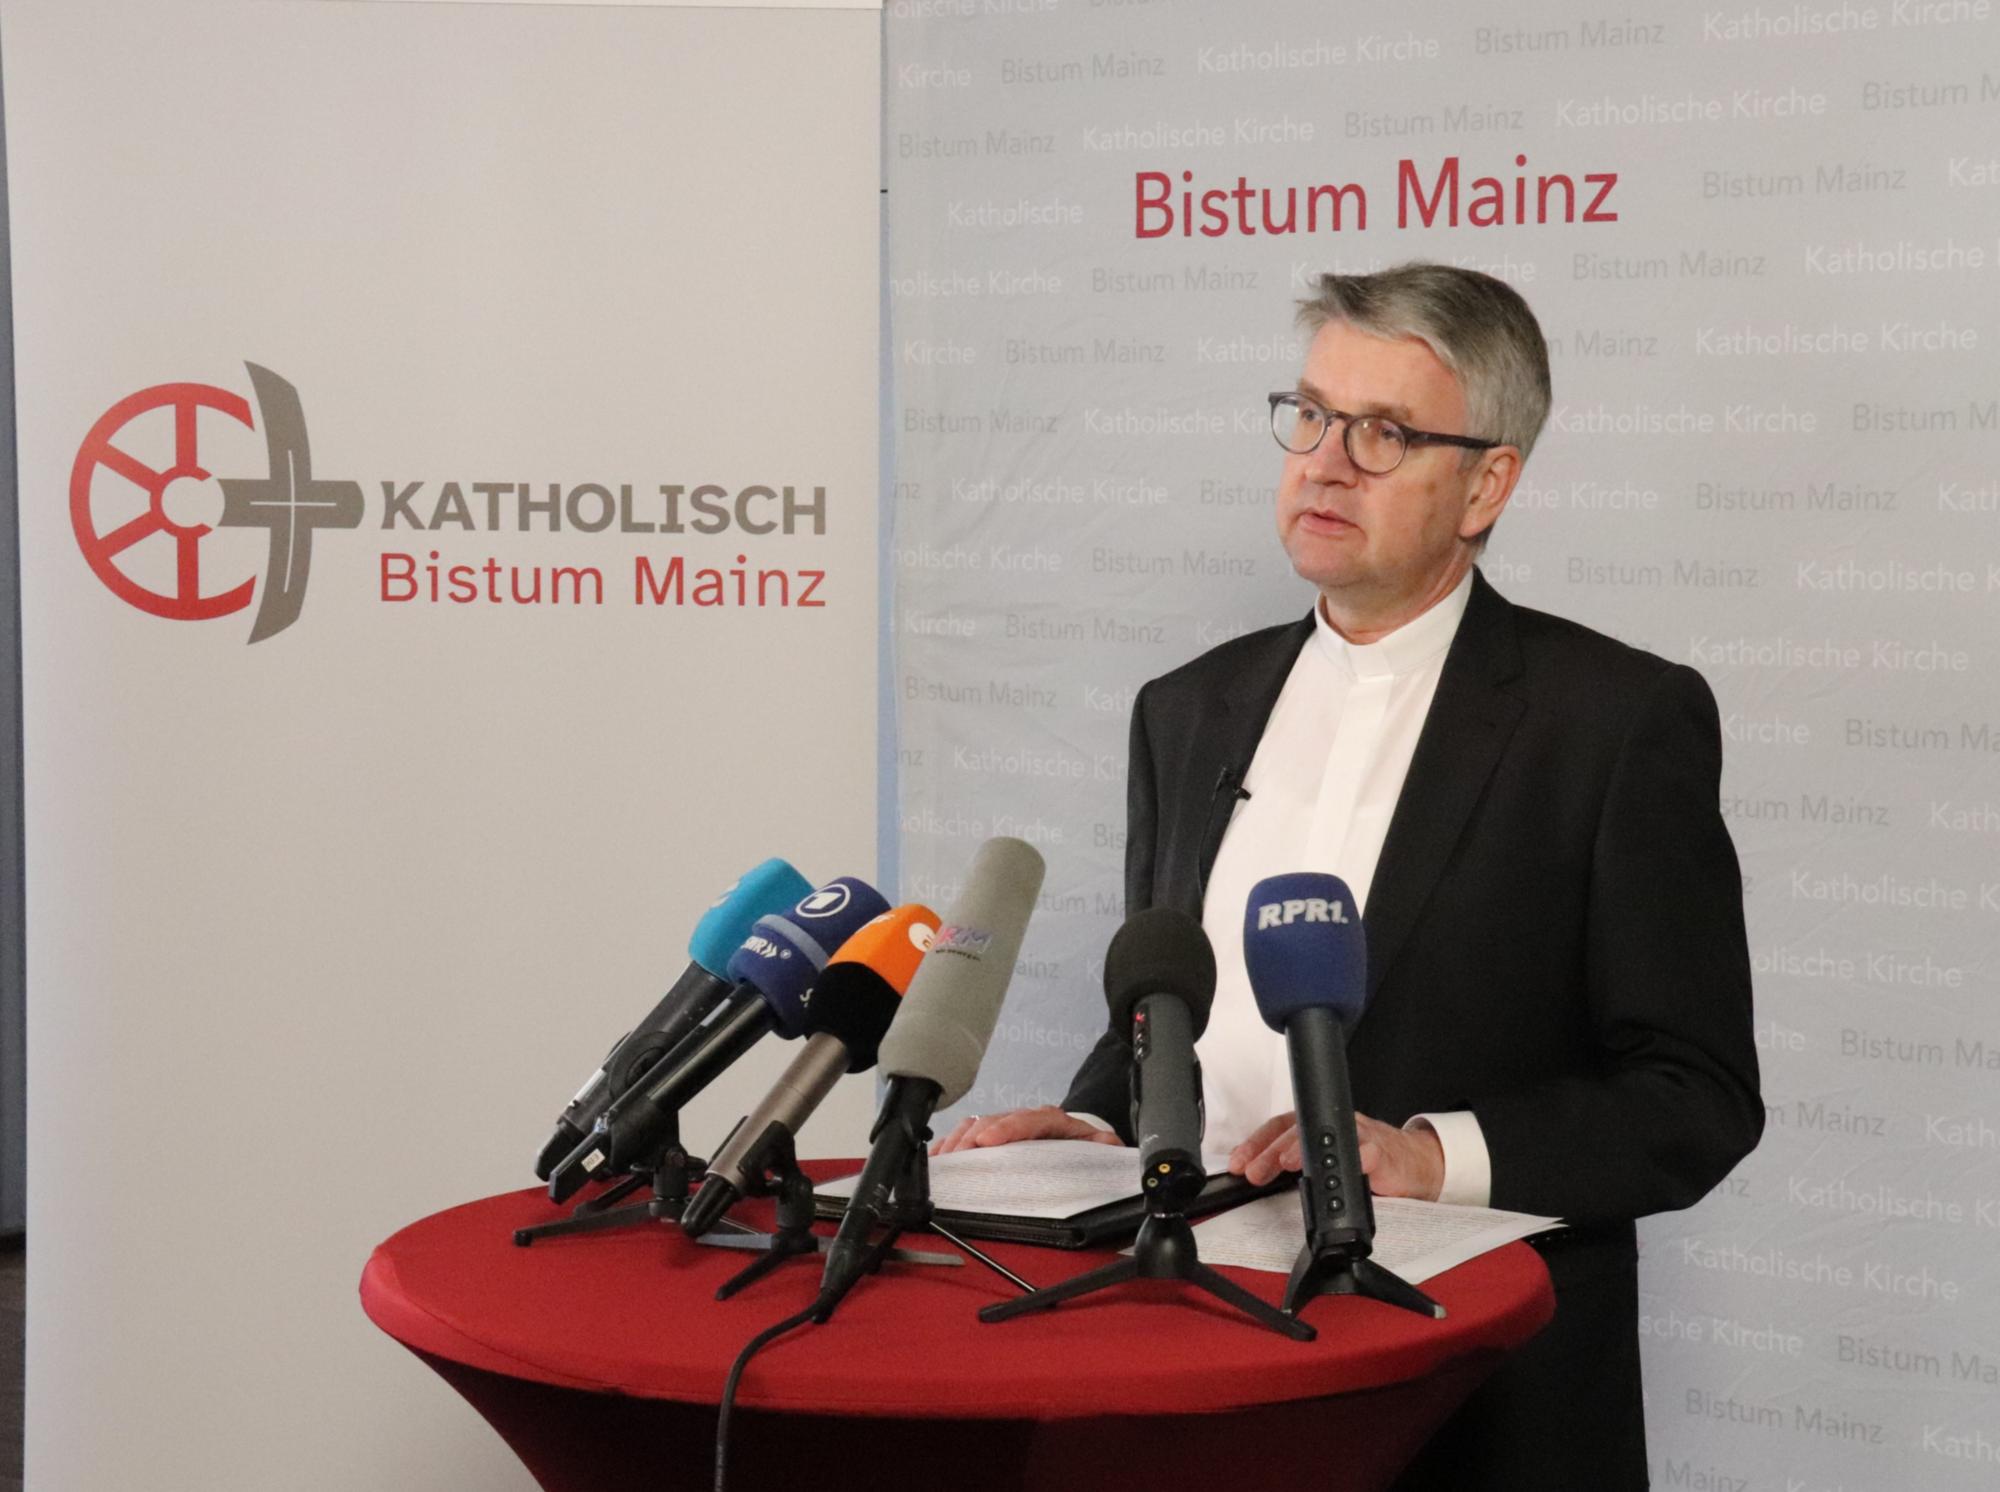 Erste Resonanz von Bischof Peter Kohlgraf nach Veröffentlichung der EVV-Studie am Freitag, 3. März im Erbacher Hof, Mainz (c) Bistum Mainz/Hoffmann